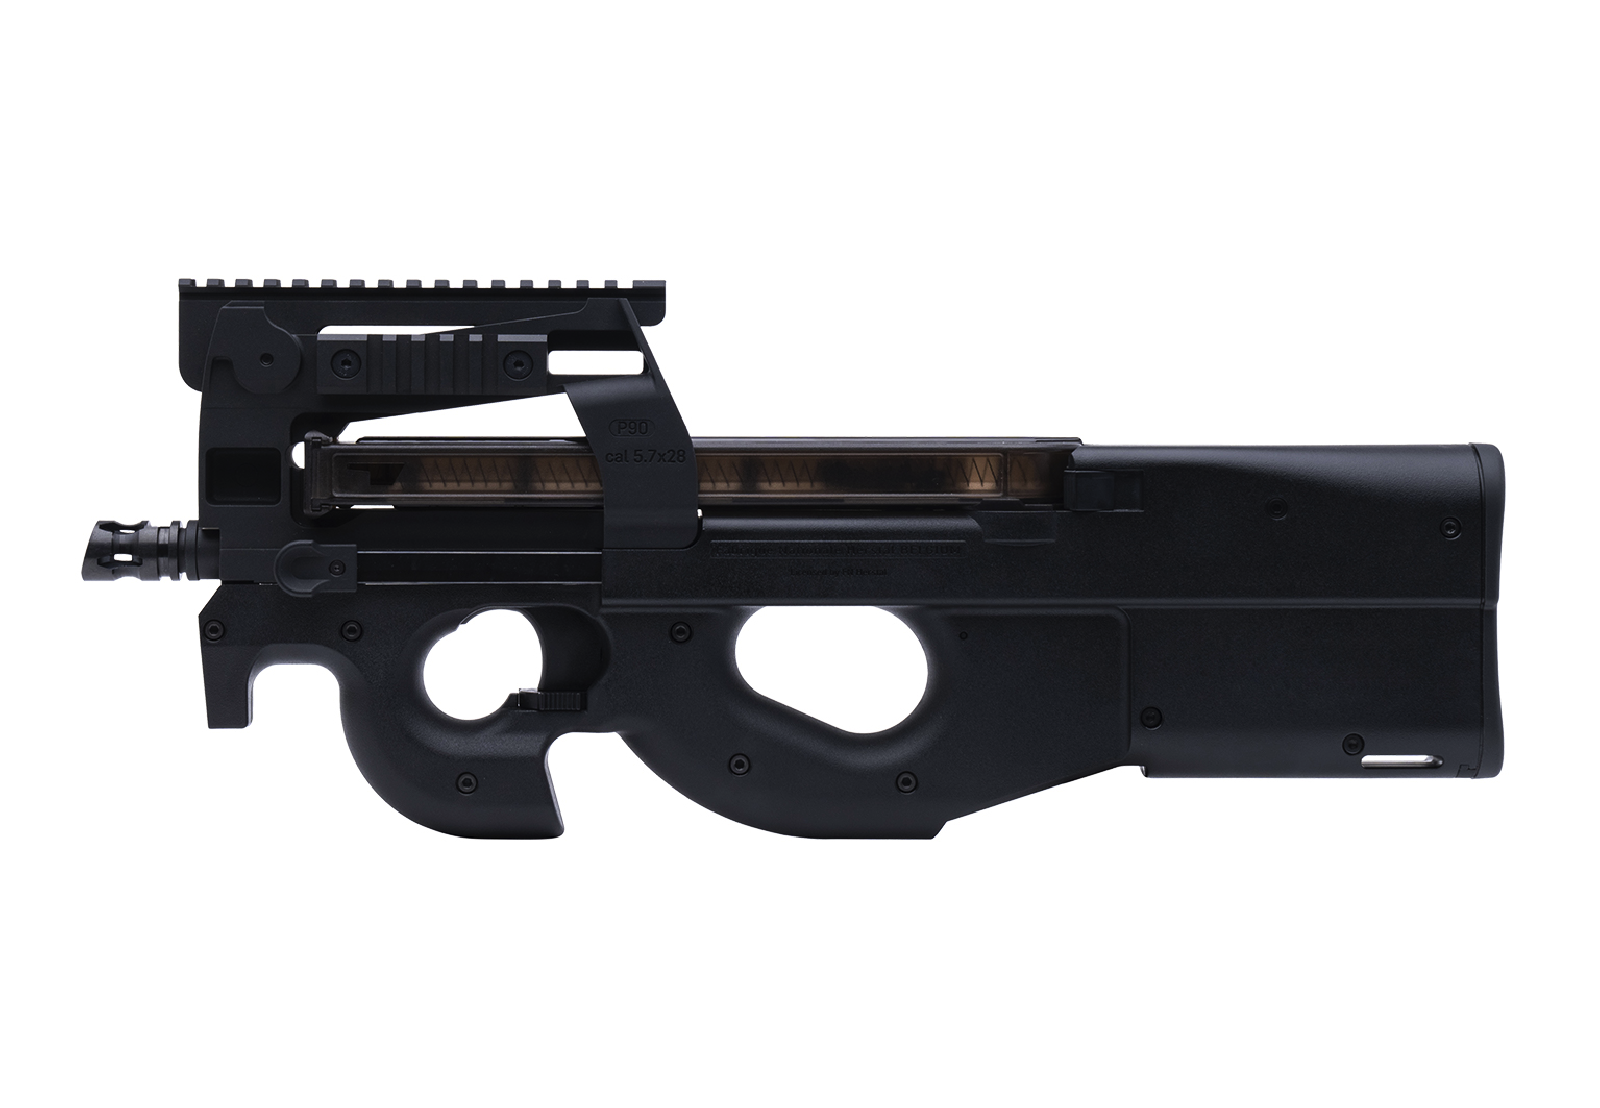 EMG FN P90 SMG: AEG / Black / 6mm / (EU)